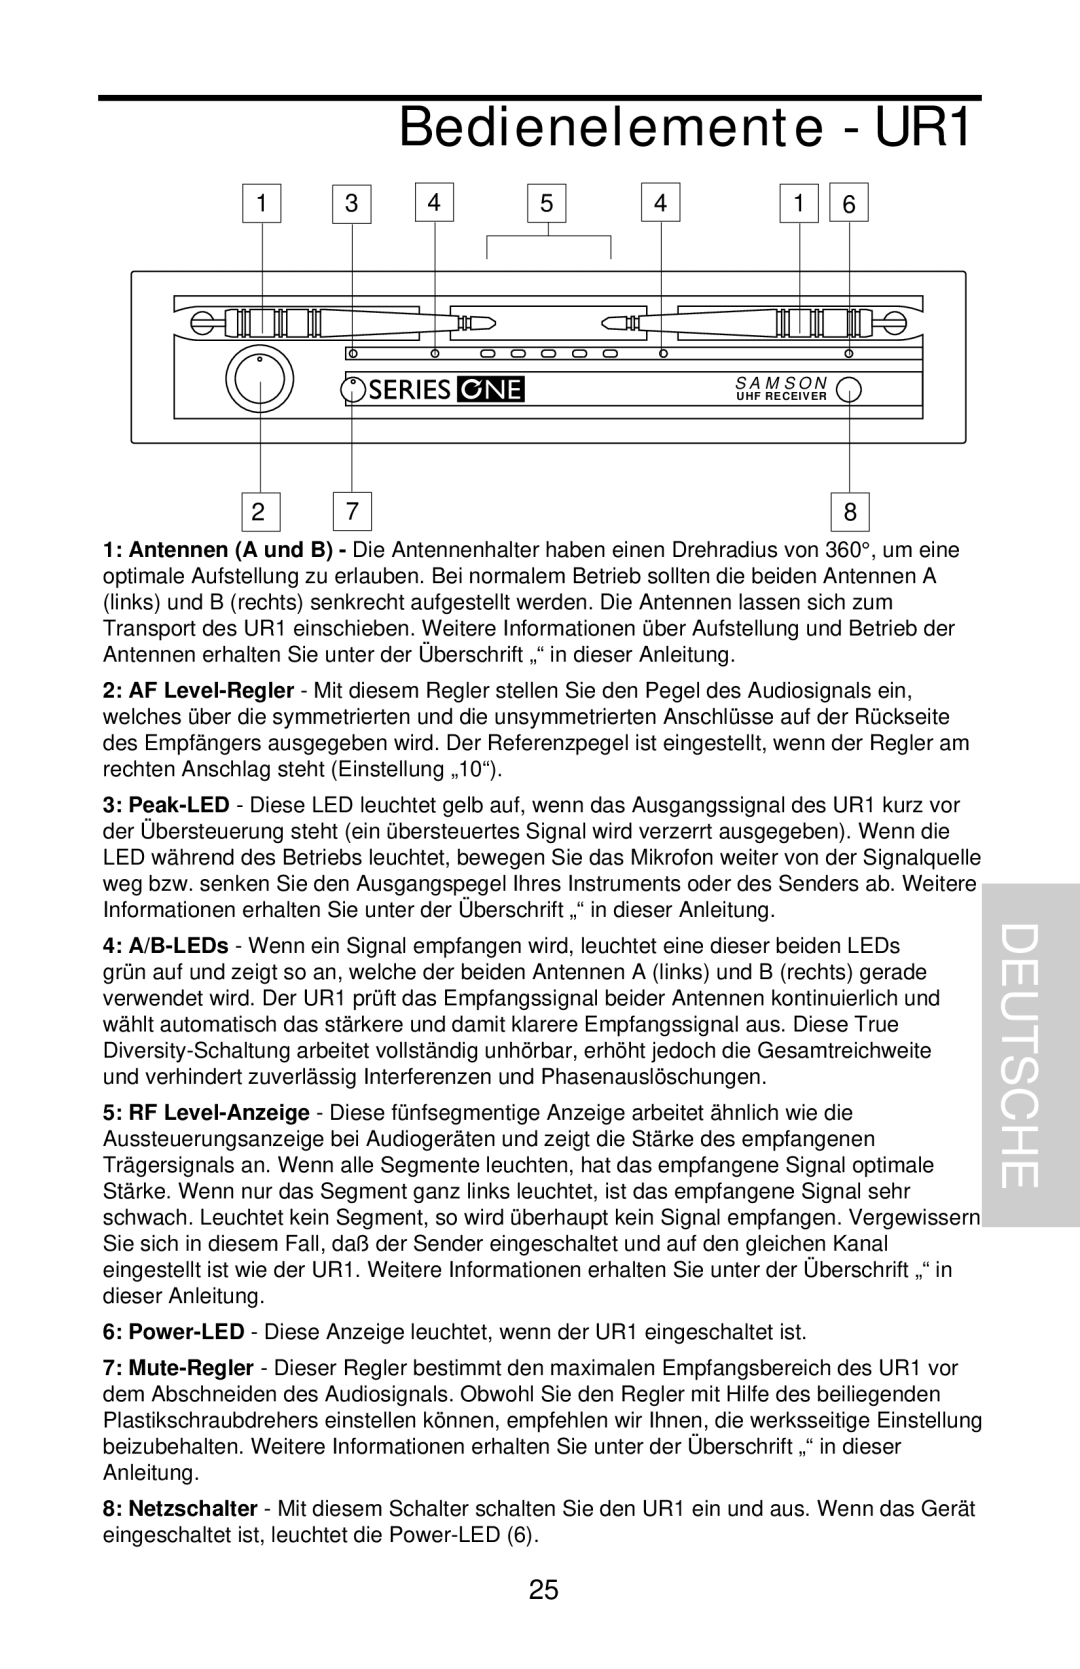 Samson UHF 801 owner manual Bedienelemente - UR1, Deutsche 